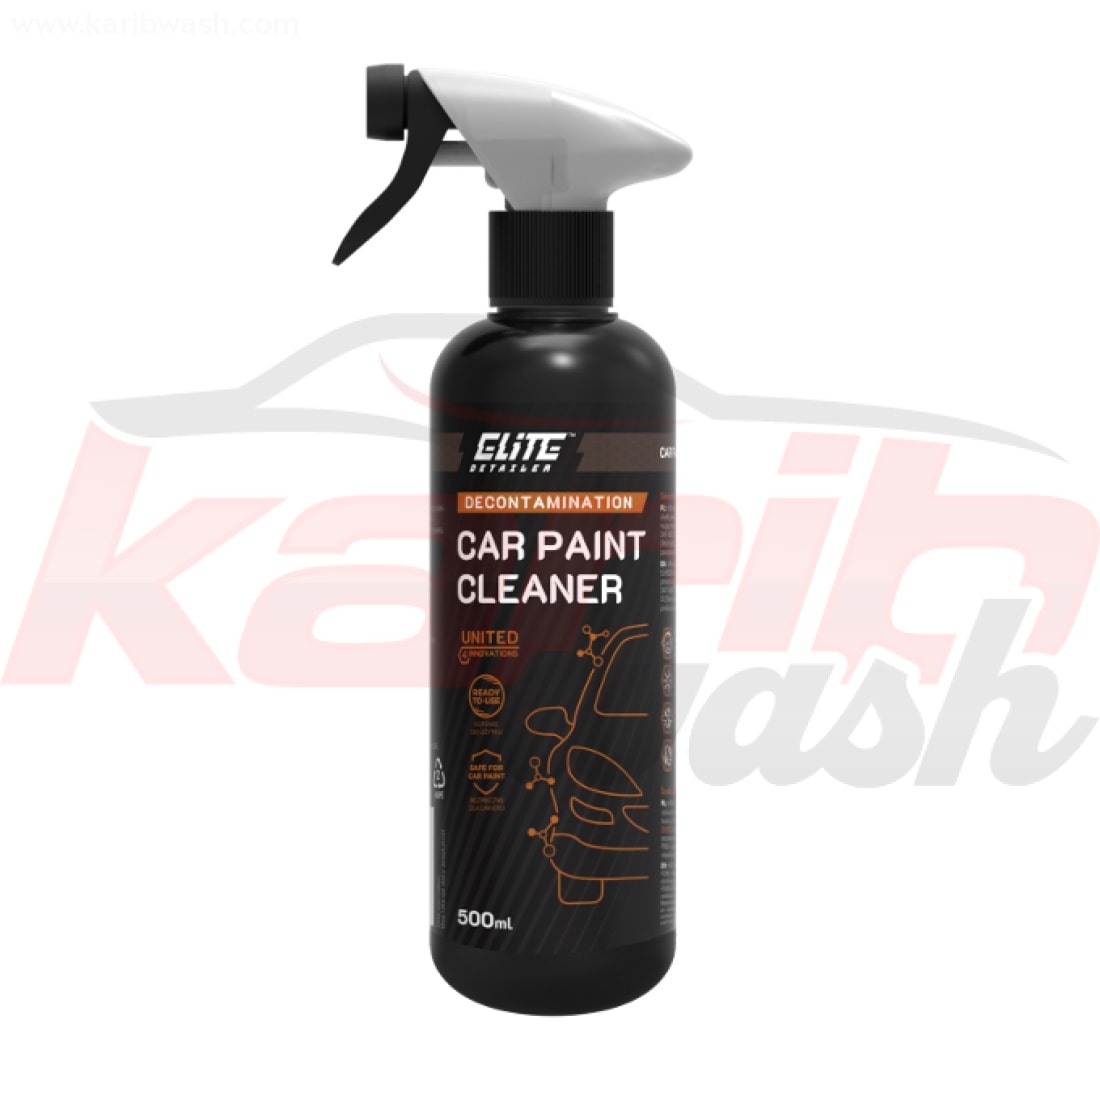 Car Paint Cleaner - Nettoyant et dégraissant peinture automobile - ELITE DETAILER - KARIBWASH